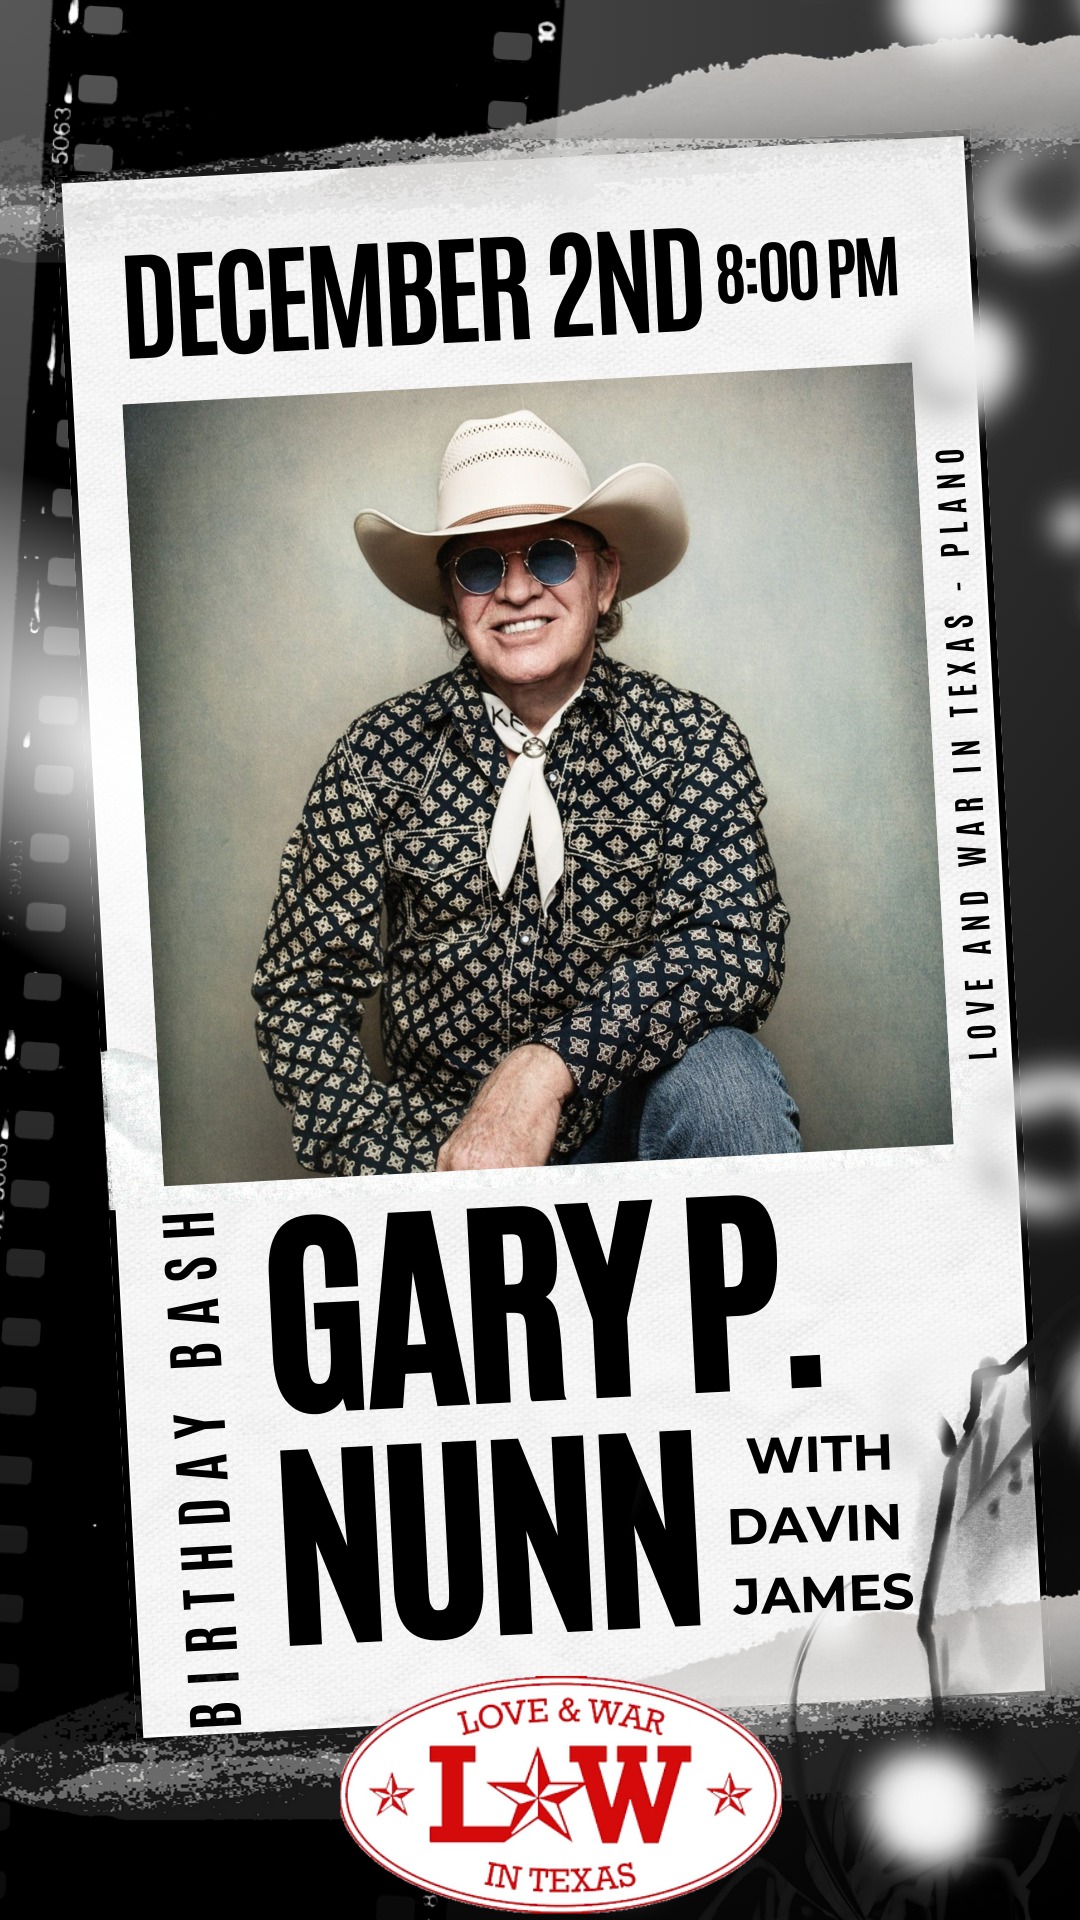 Gary P. Nunn B-DAY BASH at Texas Love & War Plano